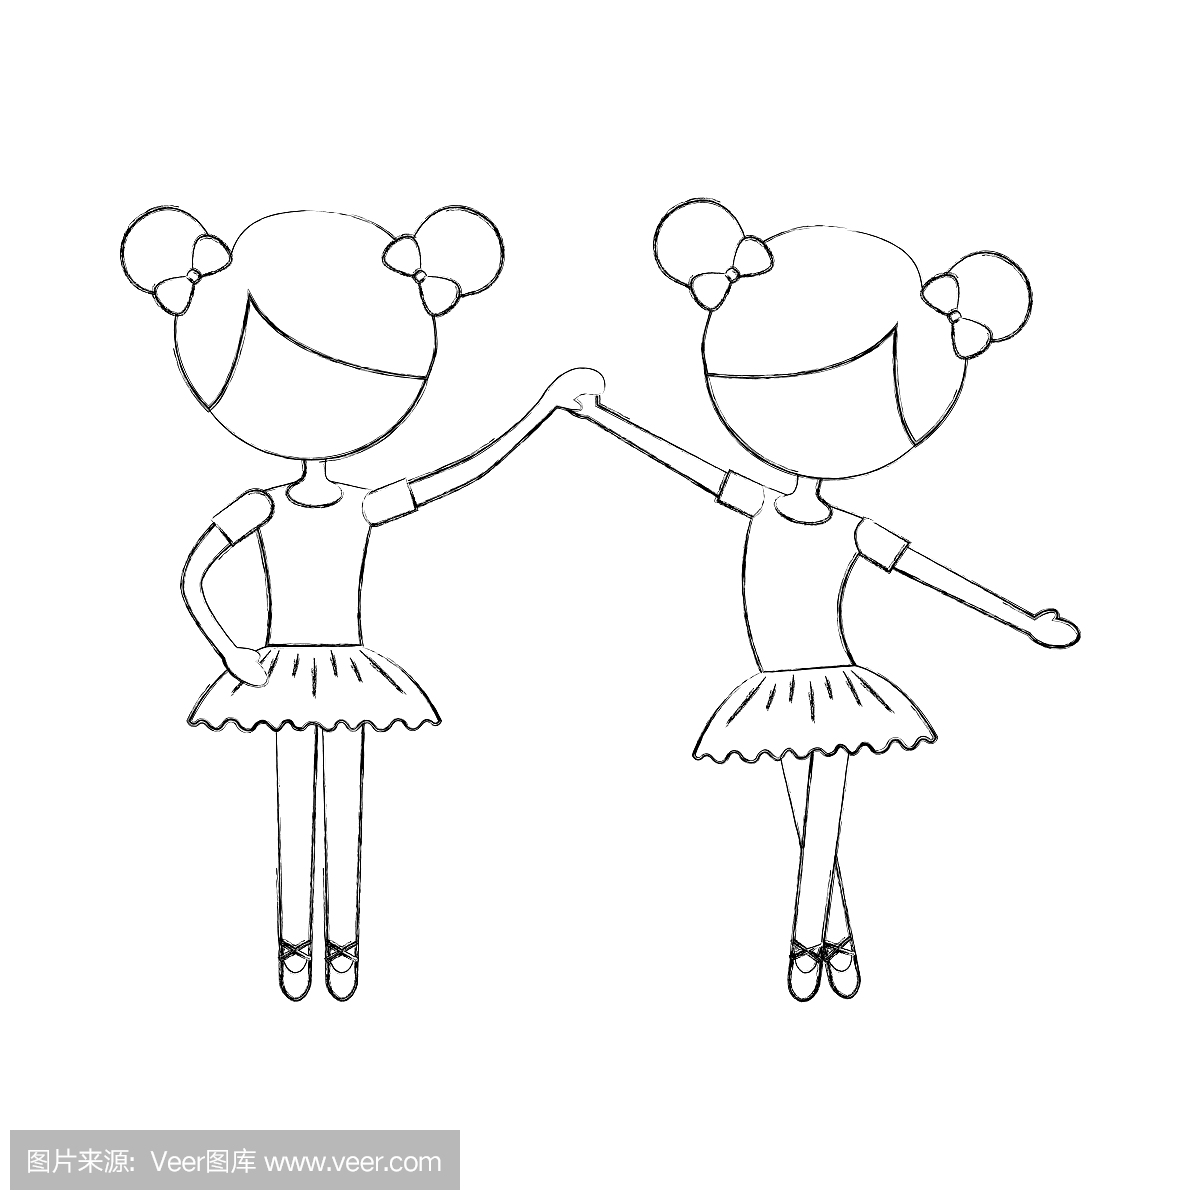 两个芭蕾舞女孩跳舞姿势站立